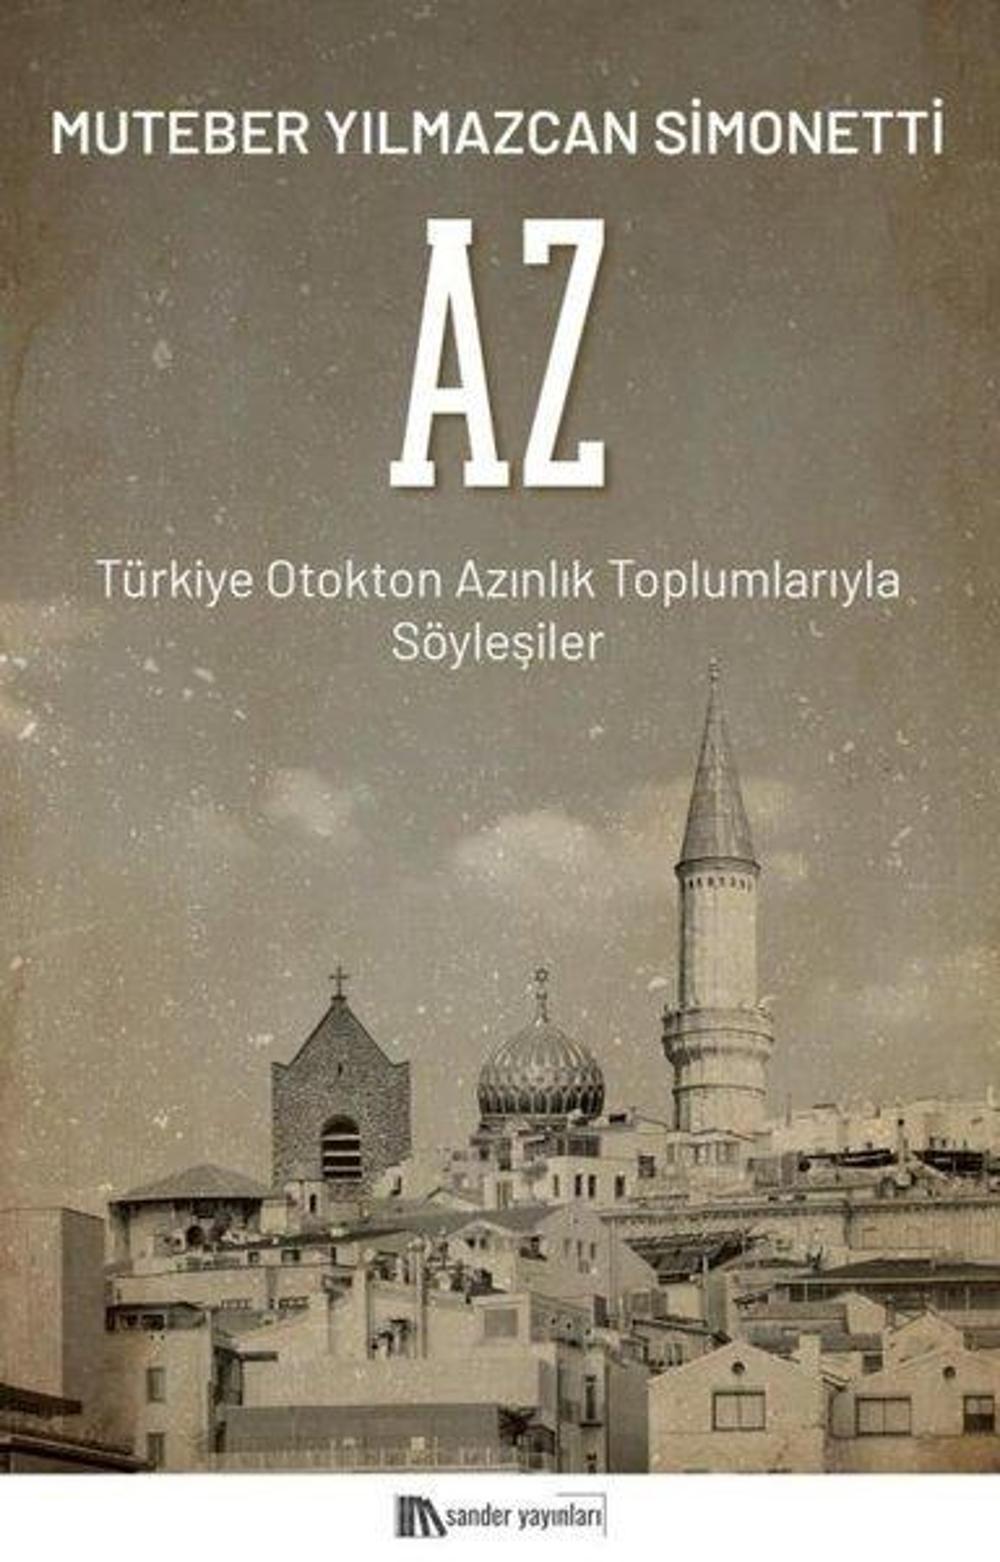 Az - Türkiye Otokton Azınlık Toplumlarıyla Söyleşiler | Sander Yayınları